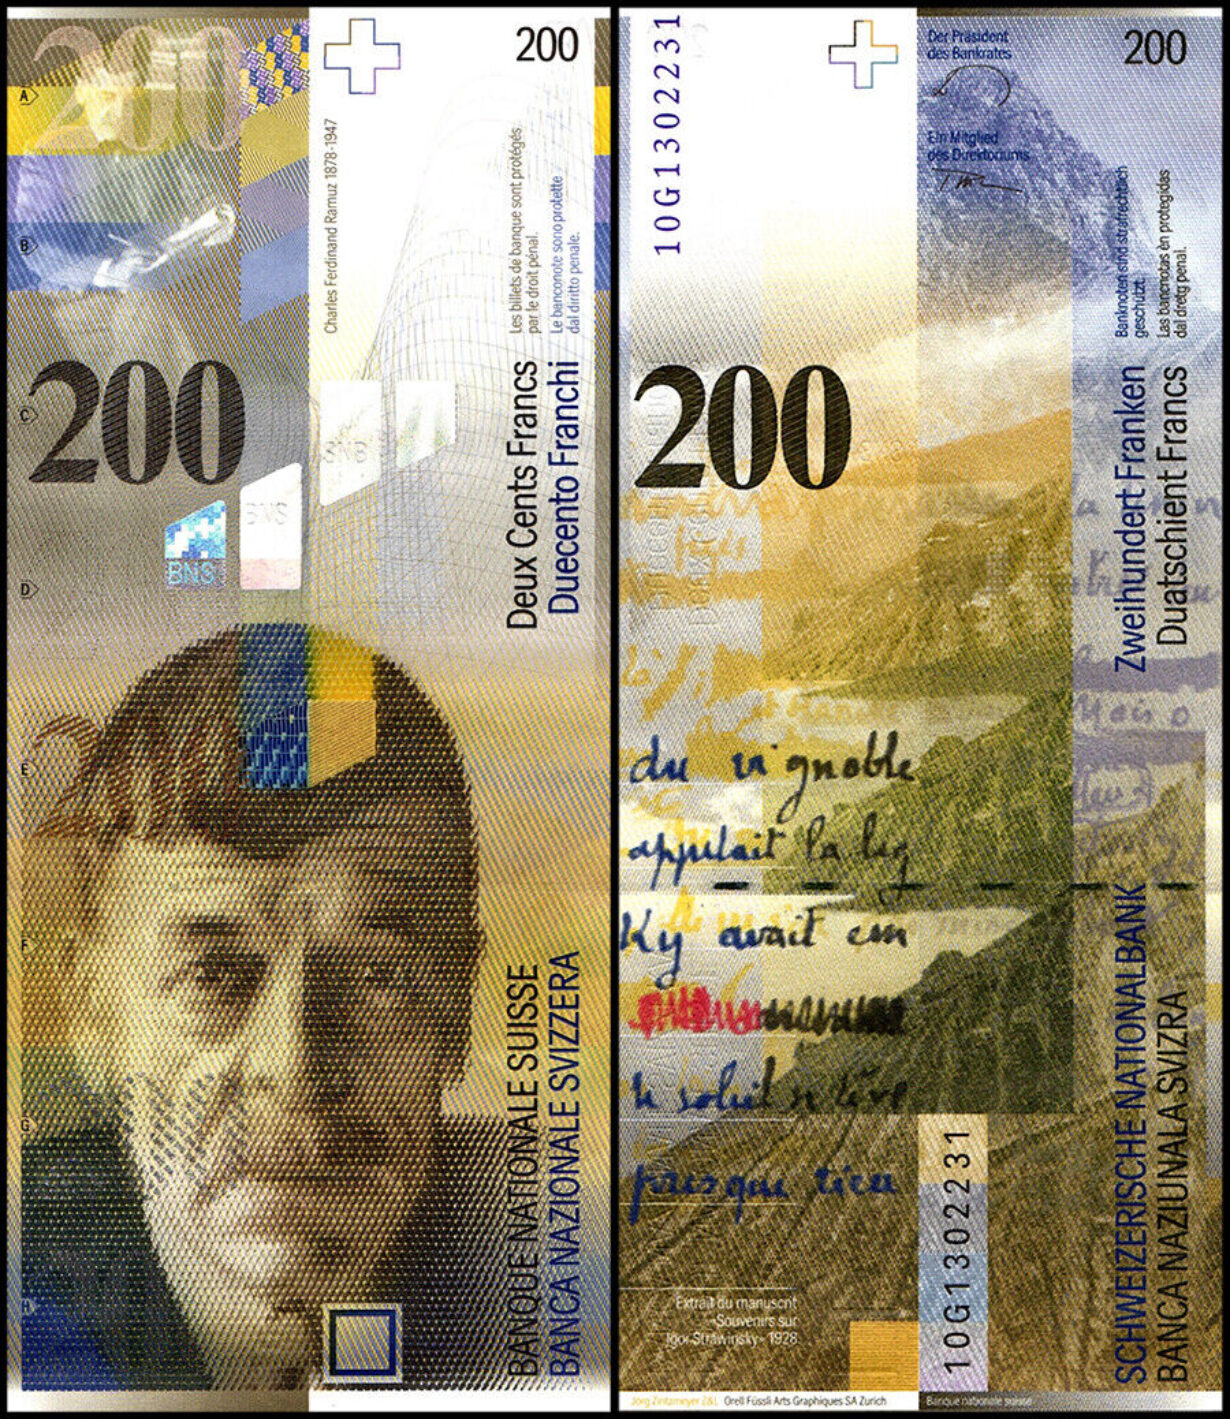 Billet de 200 francs suisses recto verso figurant le portrait de Ramuz et Lavaux.